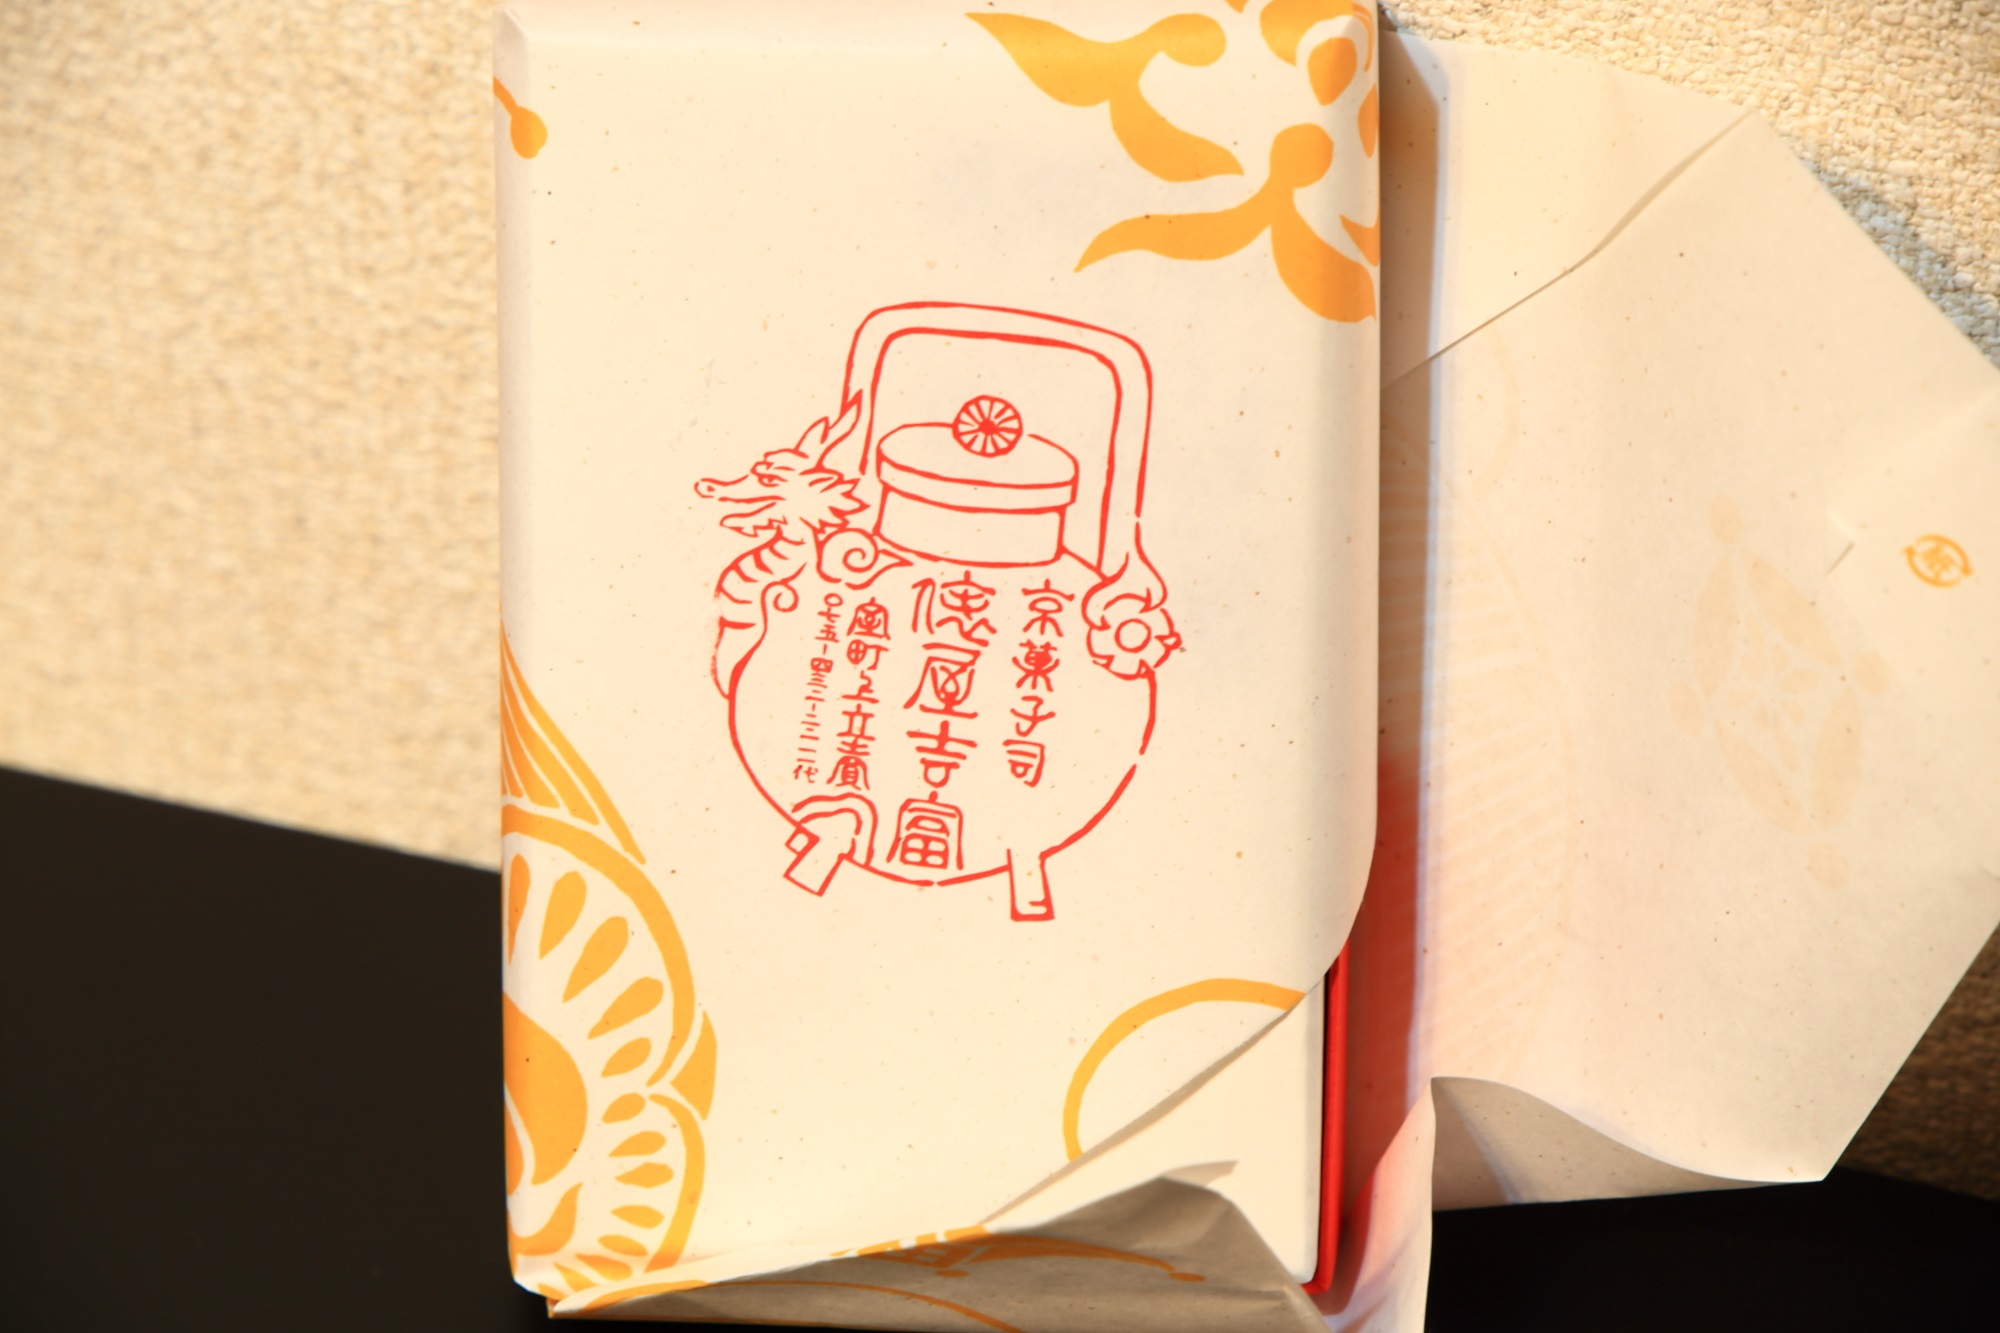 俵屋吉富 祇園店の糖蜜ボンボン 京つれづれの包装紙